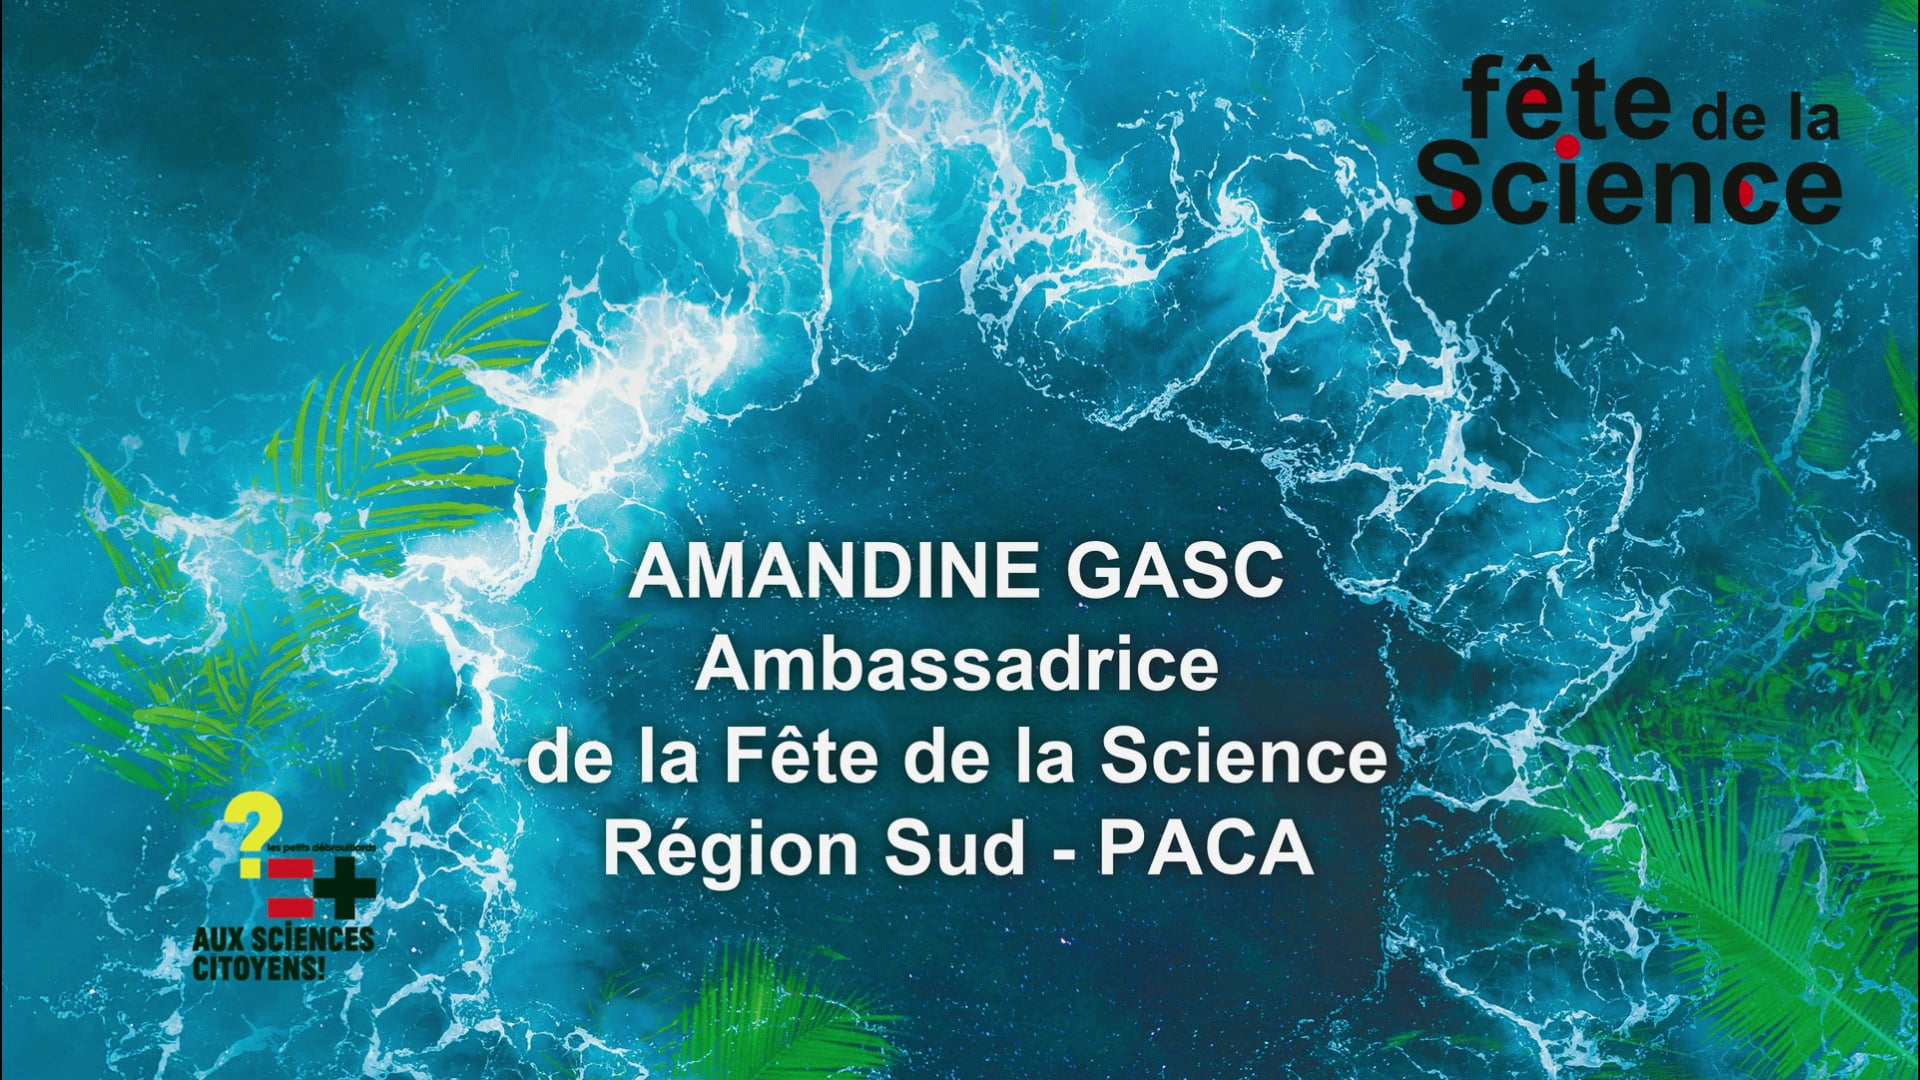 AMANDINE GASC, Ambassadrice de la Fête de la Science